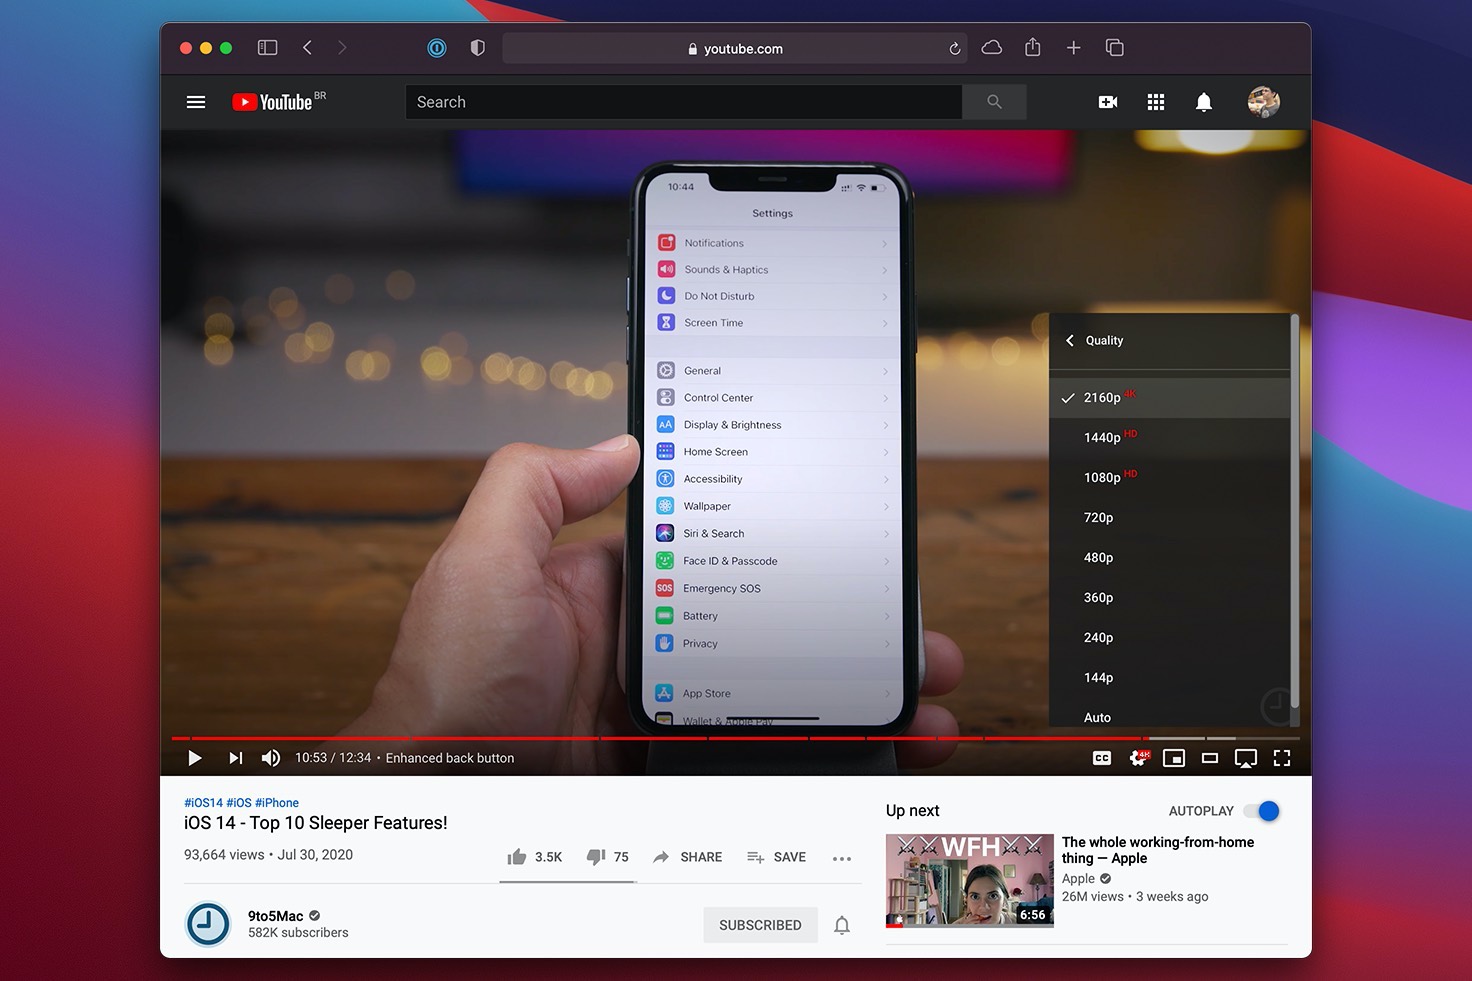 Safari в macOS Big Sur получил поддержку 4K-видео на YouTube